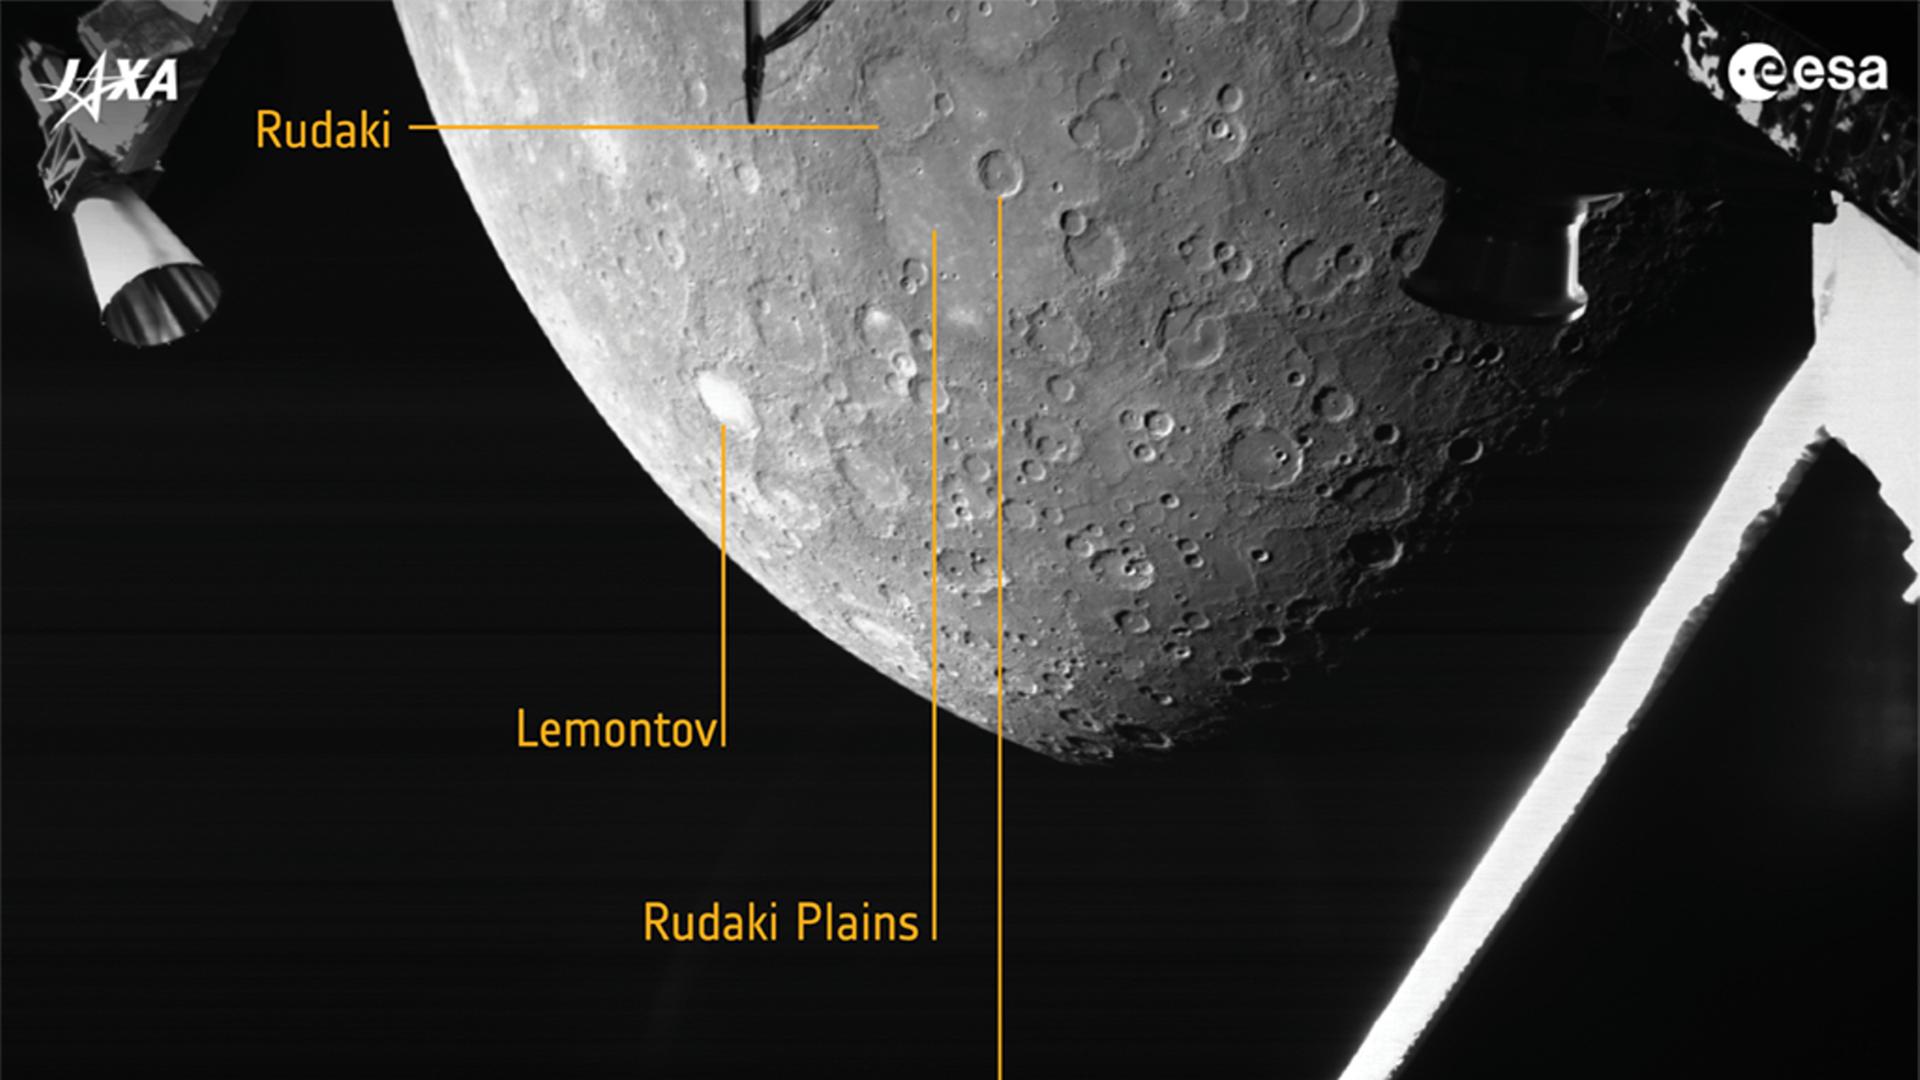 Der Raumsonde BepiColombo gelang diese Aufnahme beim Blick zurück zum Merkur am 1. Oktober 2021 aus 2418 Kilometern Abstand.